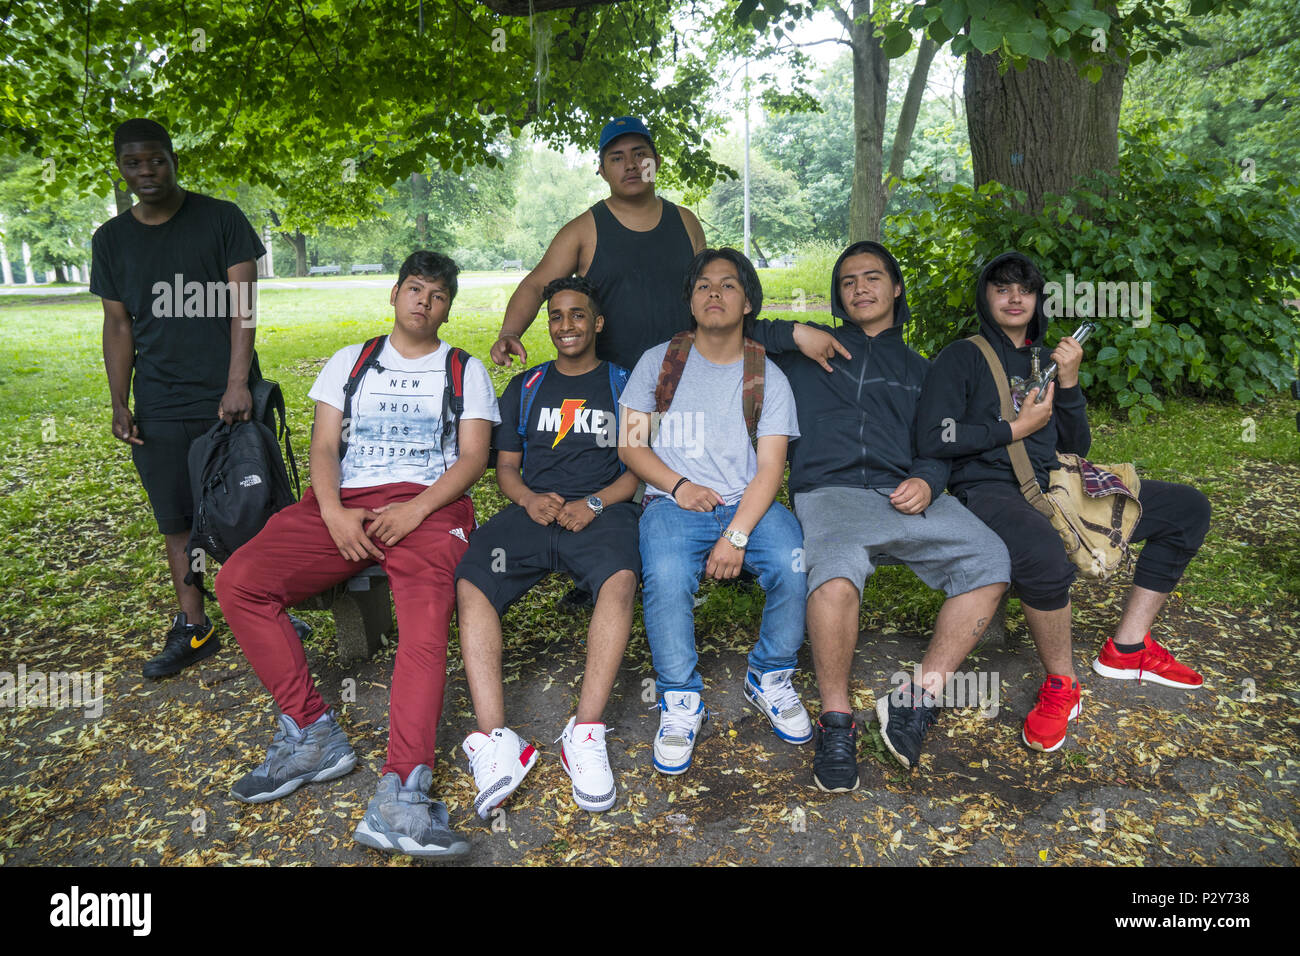 High School Alter multi-ethnische Gruppe von jungen gerne posieren für ein Foto im Prospect Park, Brooklyn, New York. Stockfoto